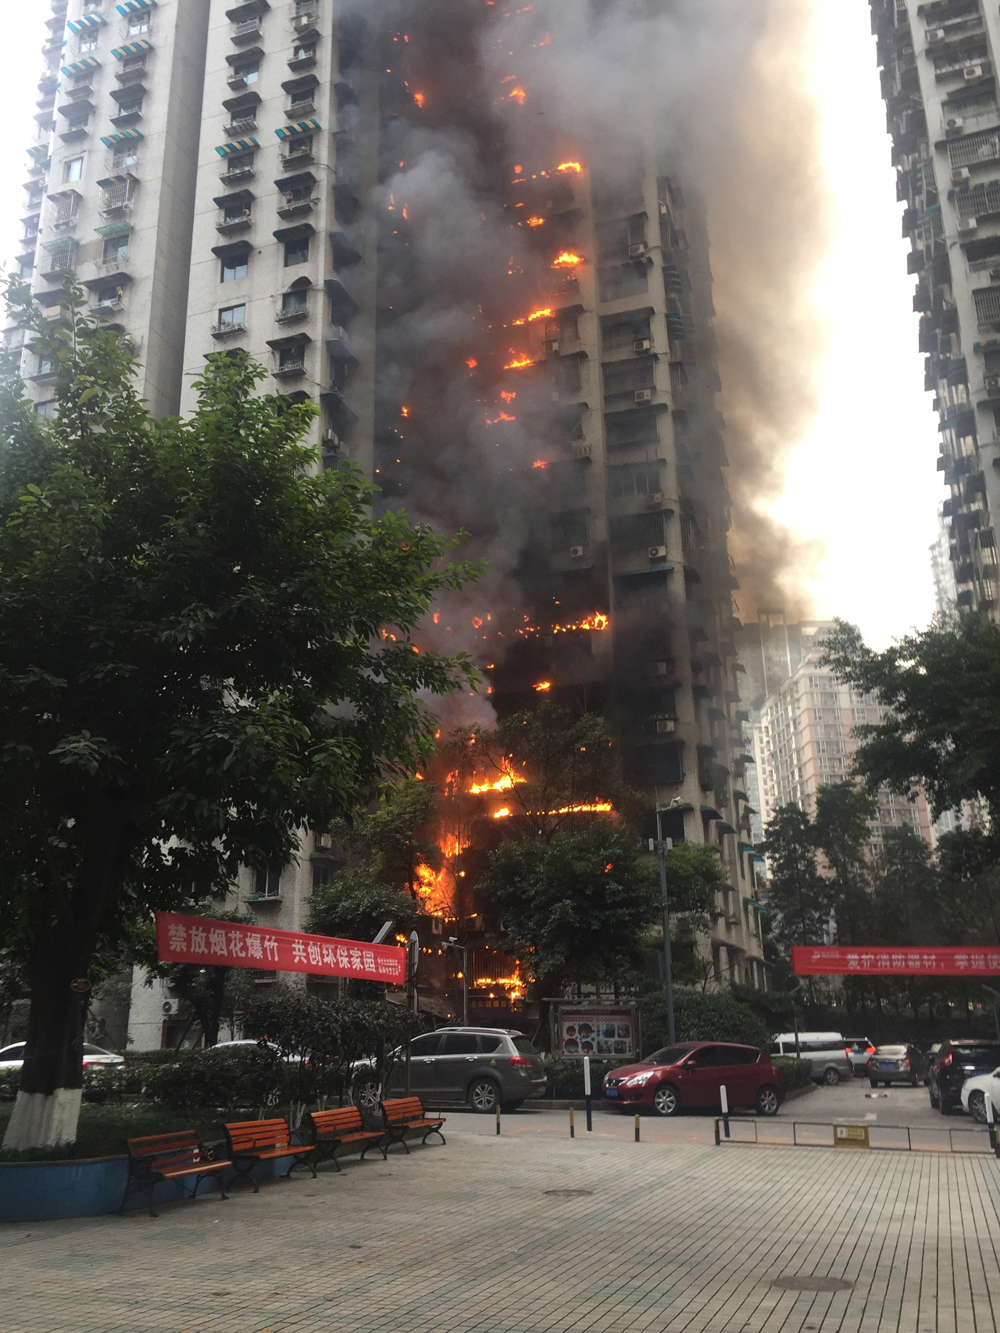 重庆消防：加州花园火灾原因正走法律程序 近期可能公布